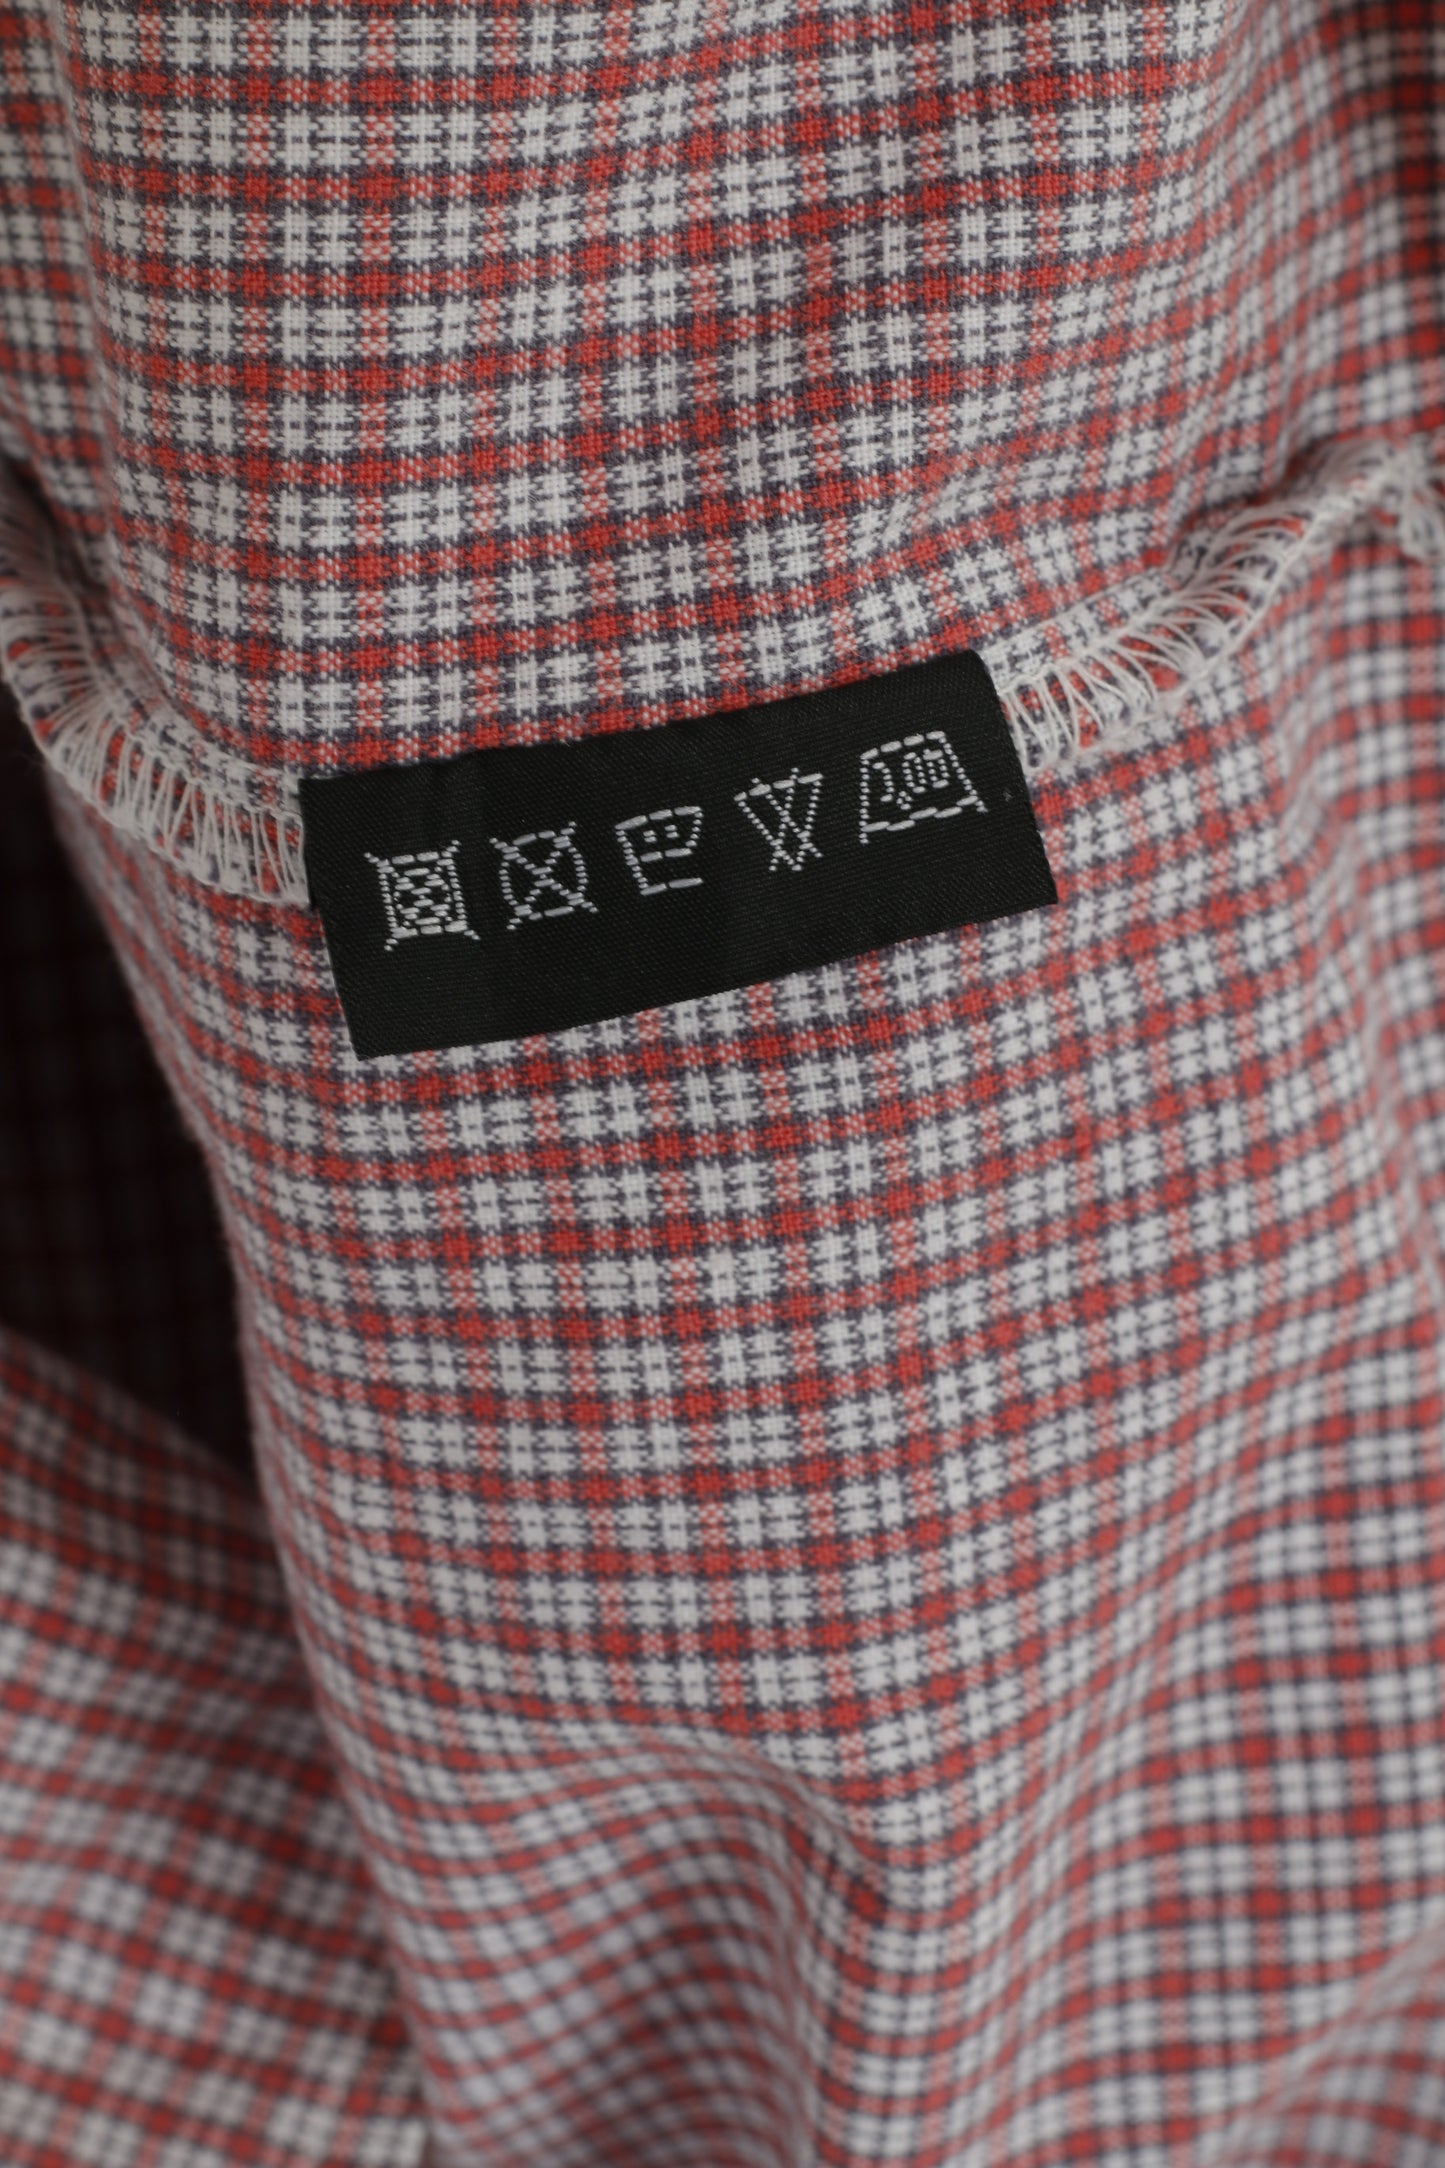 GAUPA Chemise décontractée XL pour homme en coton à carreaux rouges avec poche extérieure à manches longues